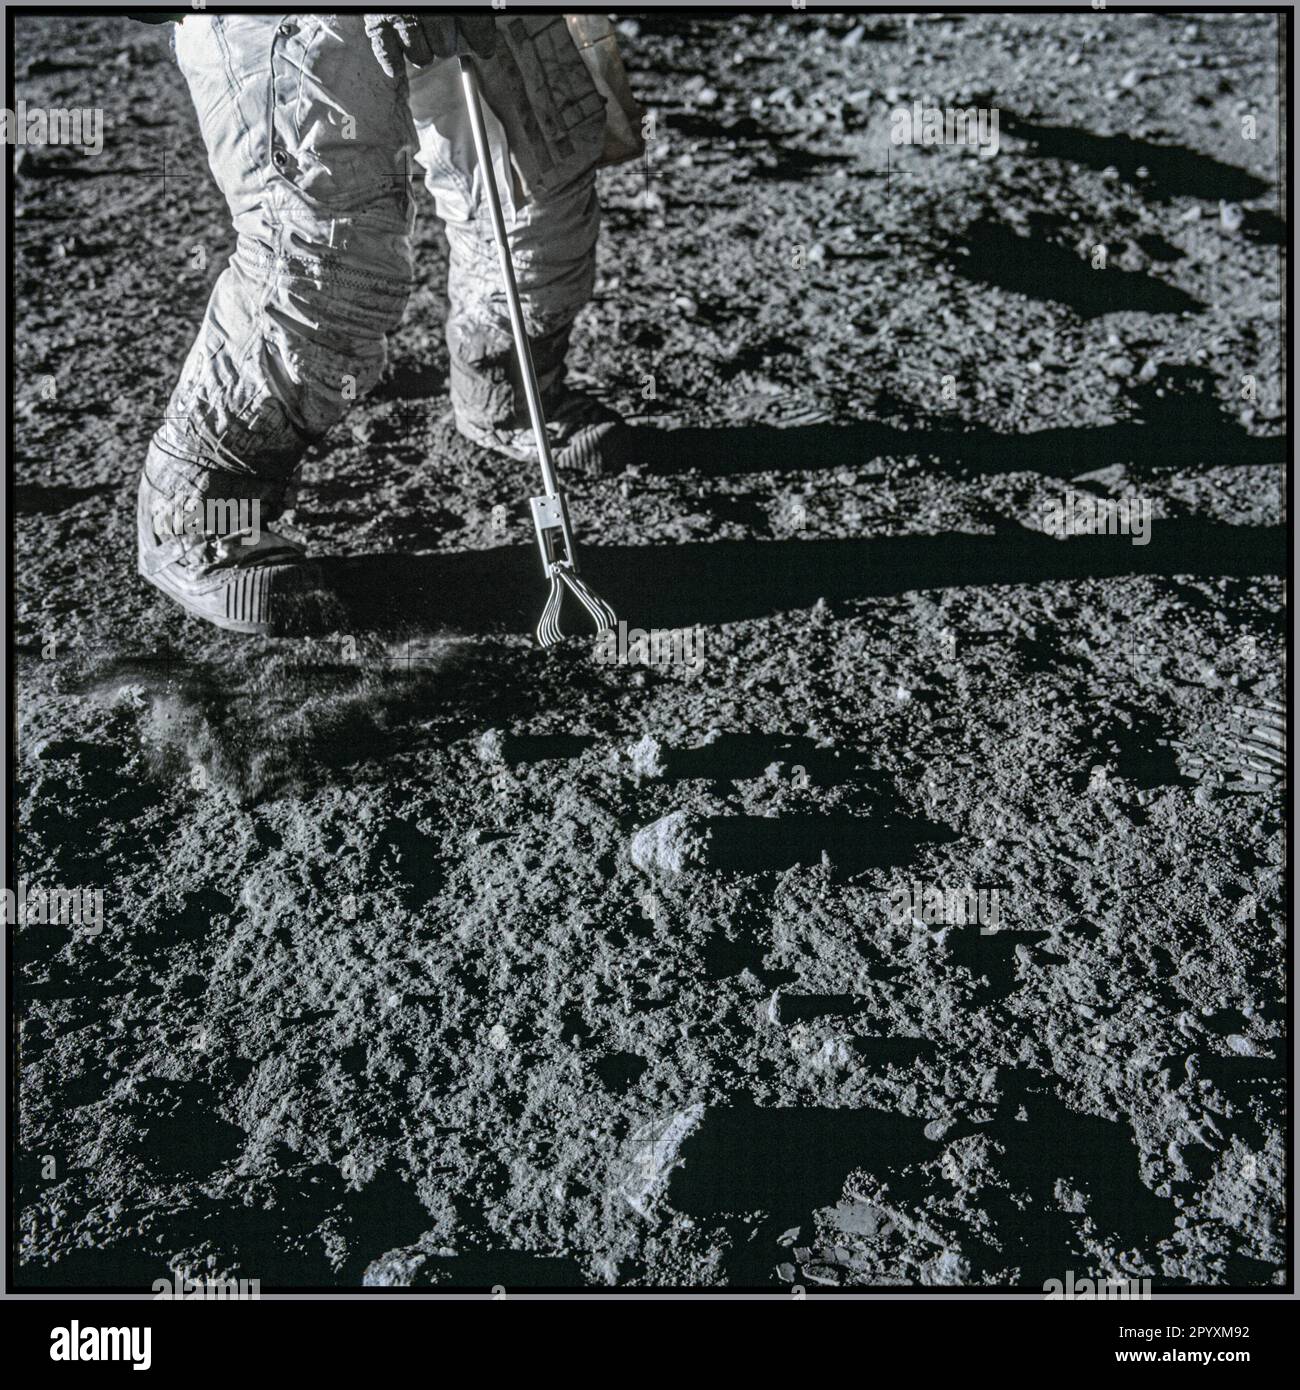 Nahaufnahme eines Satzes Zangen, eines Apollo Lunar Hand Tools, das vom Astronauten Charles Conrad Jr. verwendet wird, um Mondproben während der Apollo XII Mission am 19. November 1969 aufzunehmen. Datum: 19. November 1969 Stockfoto